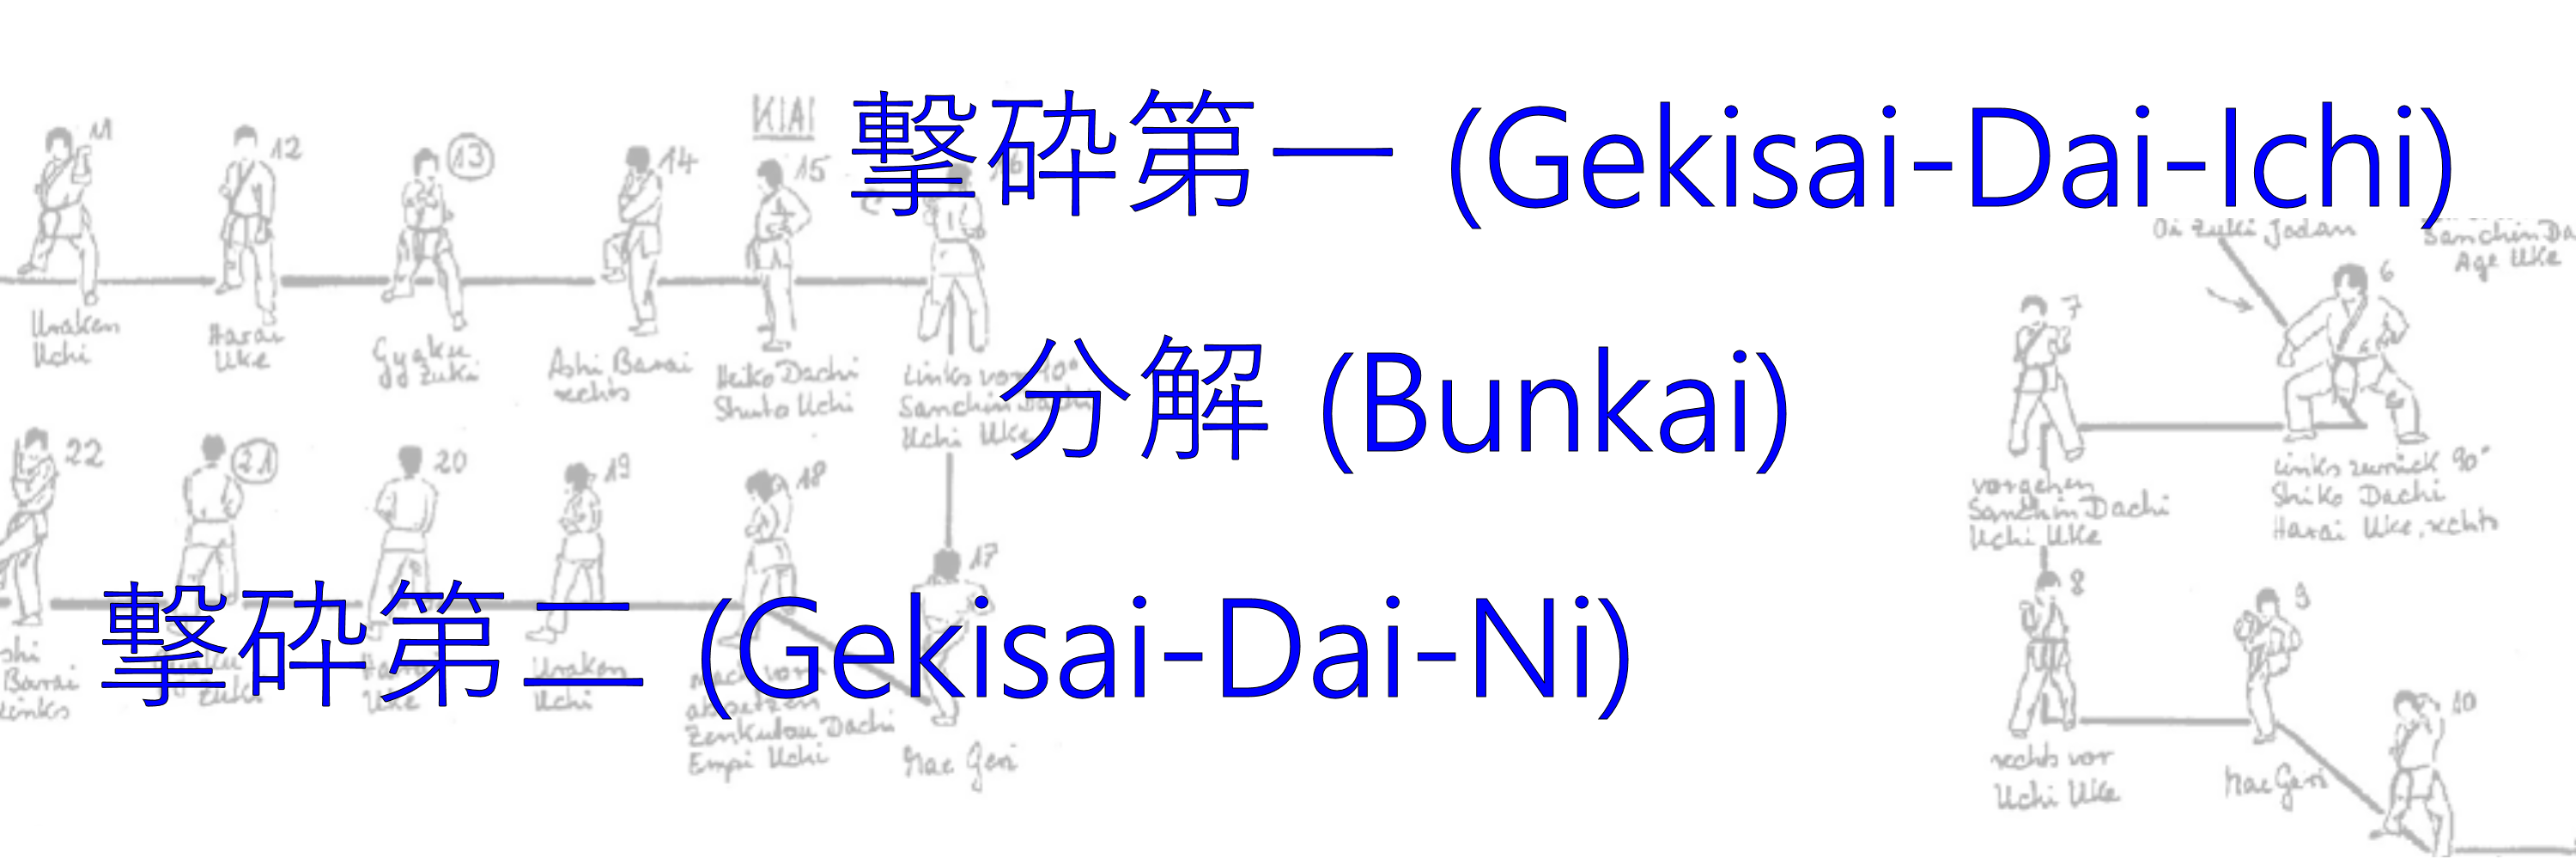 Bunkai Gekisai-Dai-Ichi Gekisai-Dai-Ni